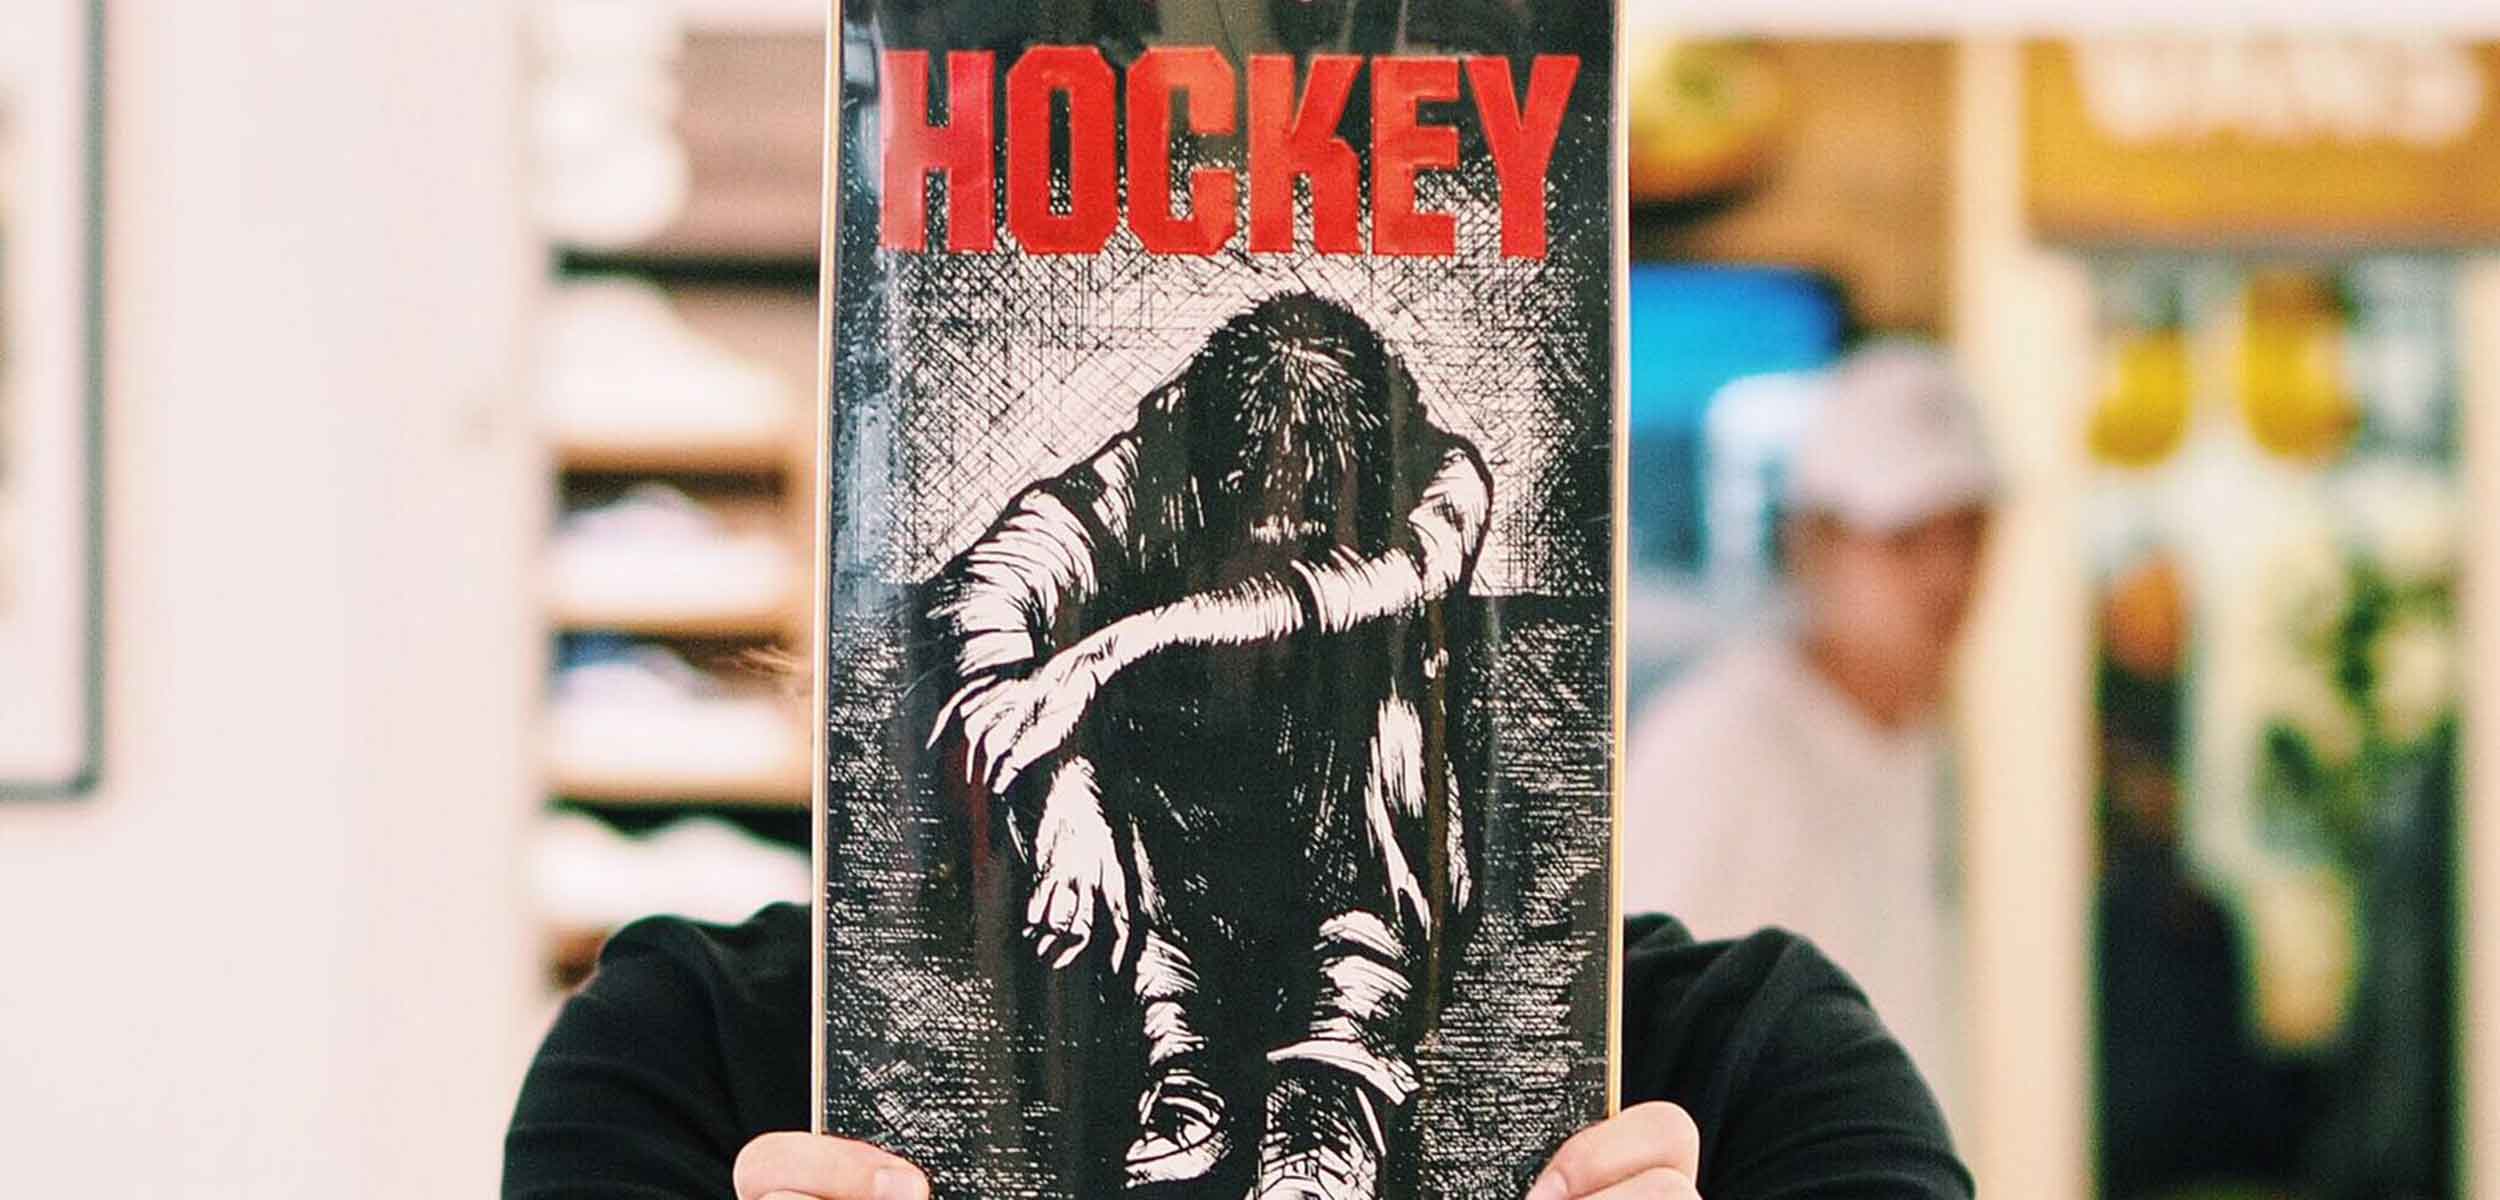 Hockey Skateboards